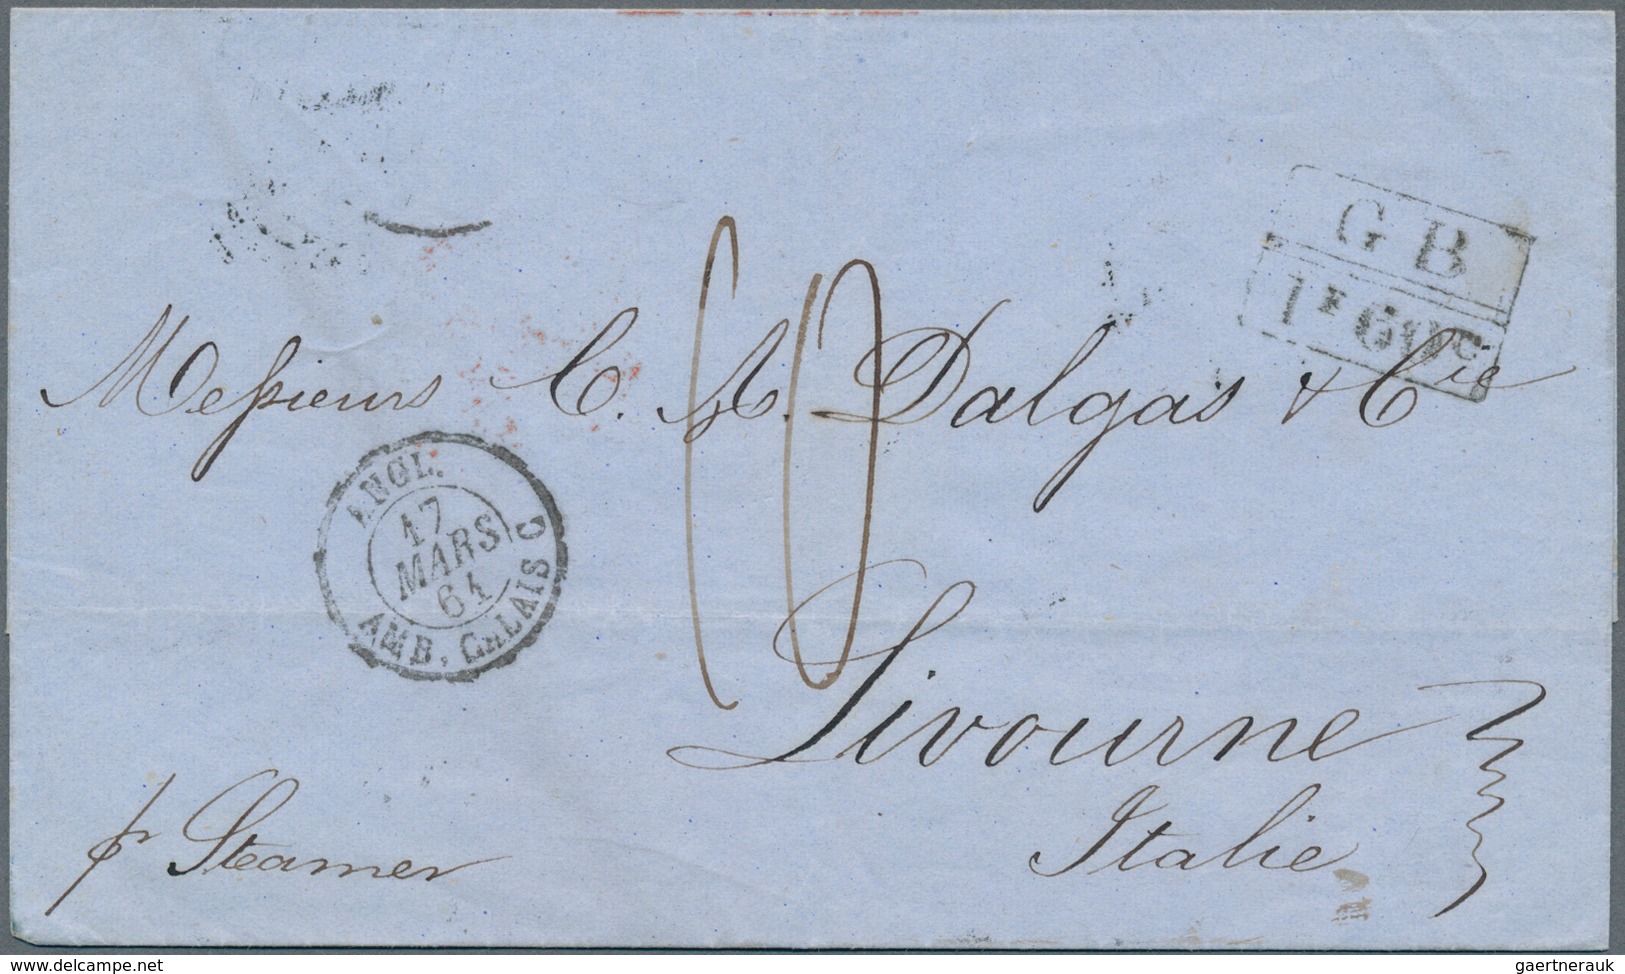 Dänisch-Westindien - Vorphilatelie: 1861, British Office: Folded Envelop Pmkd. "ST. THOMAS" FE 28 61 - Danemark (Antilles)